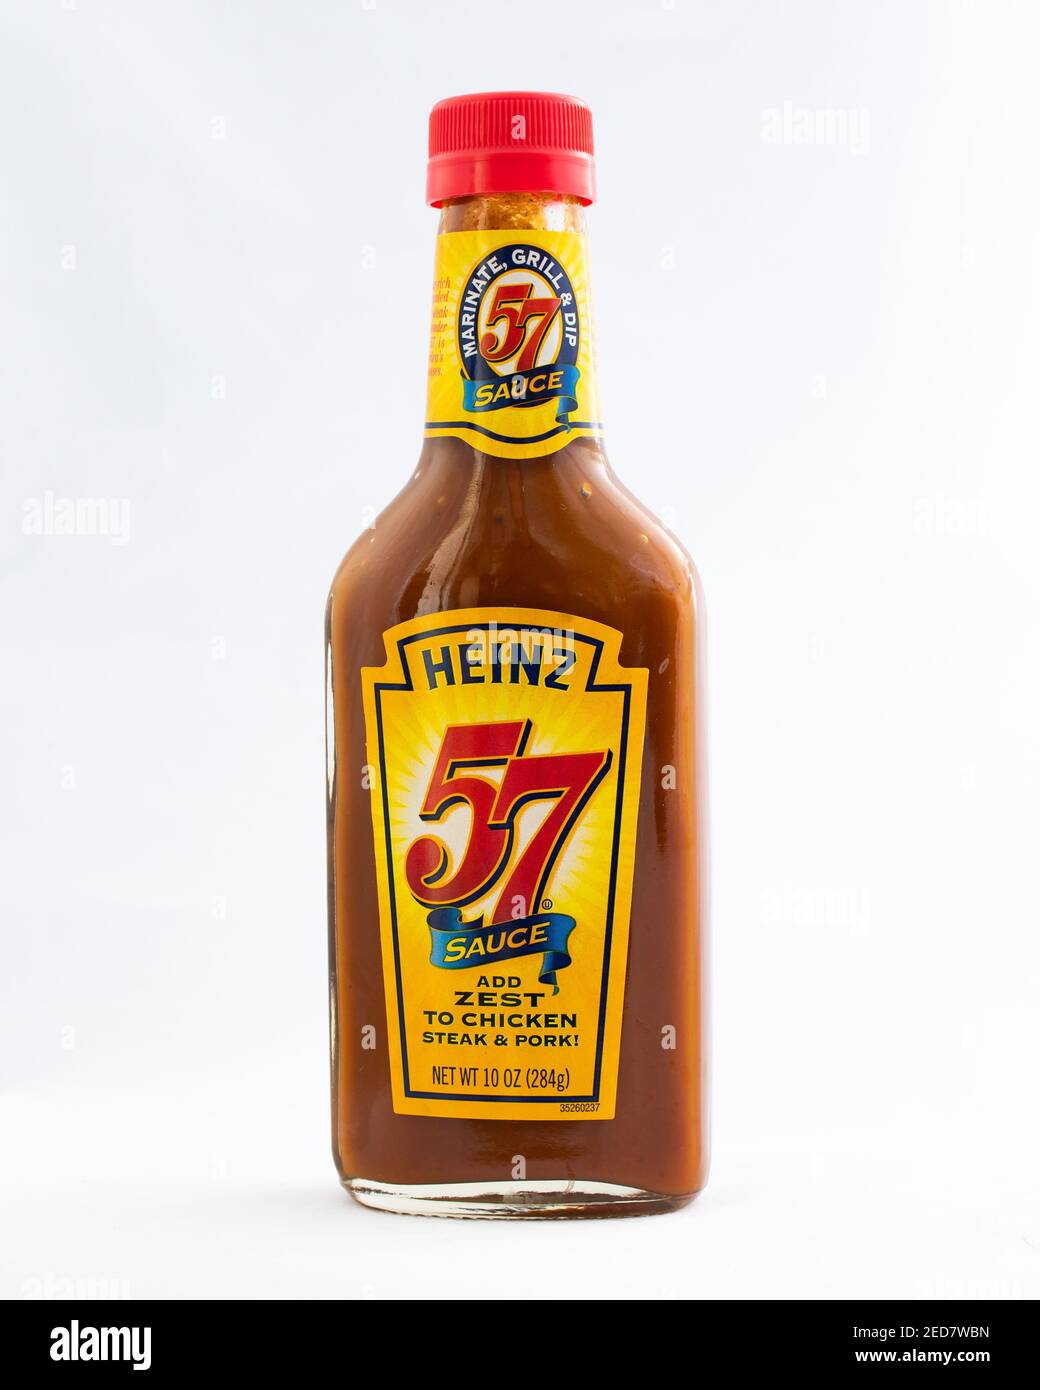 Eine Flasche Heinz-57-Sauce für die Zugabe von Zest zu Huhn, Steak und Schweinefleisch isoliert auf weiß. Stockfoto